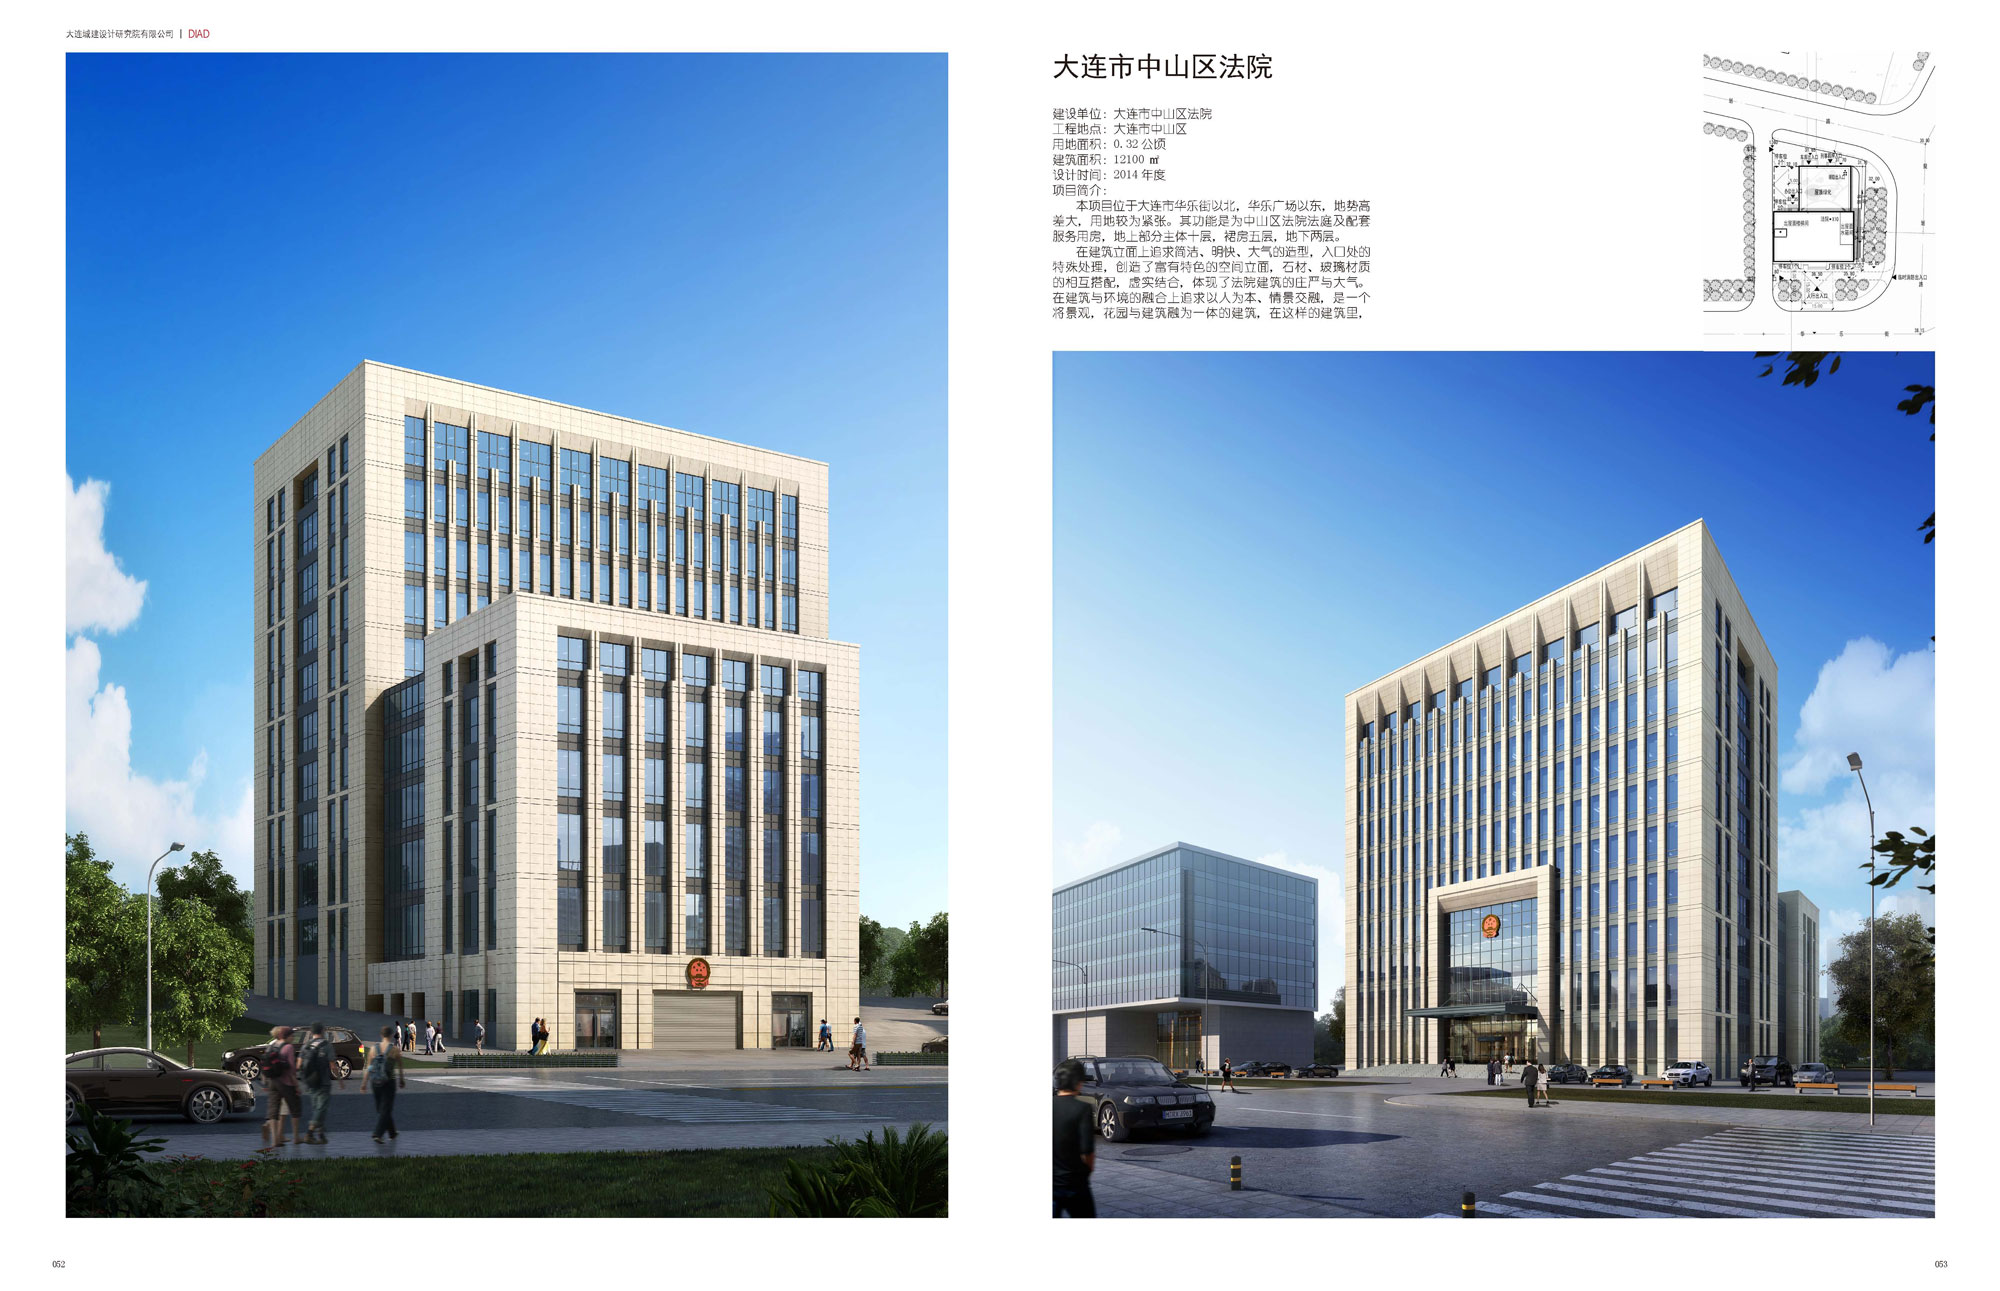 Dalian Zhongshan District Law Court